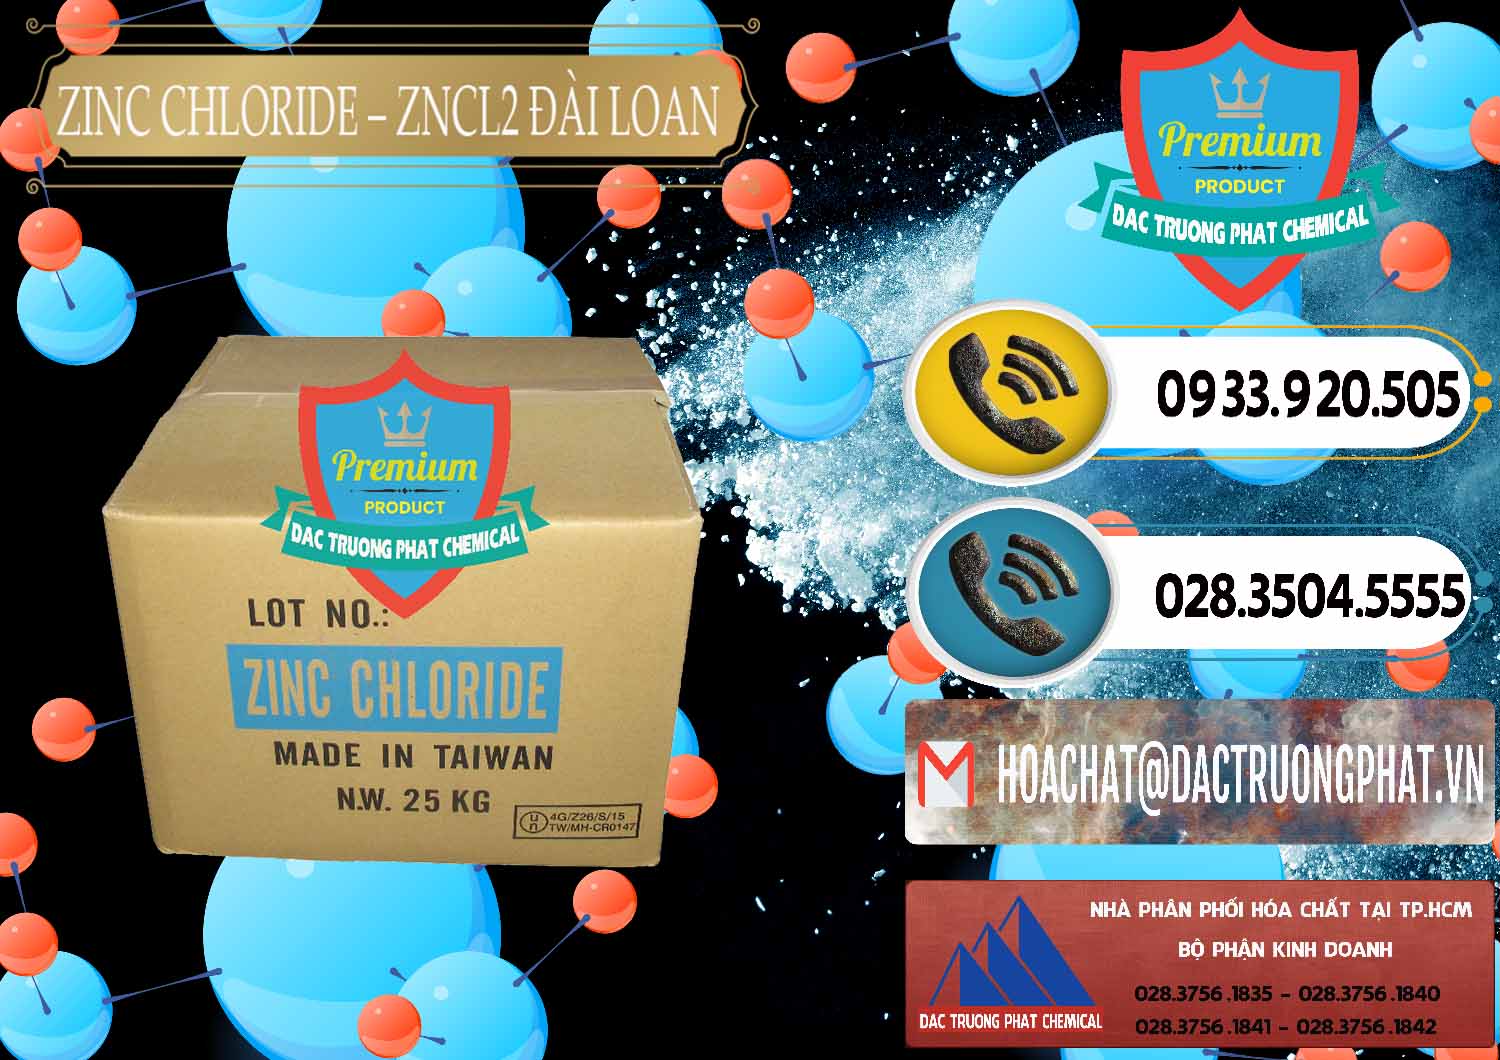 Chuyên bán _ cung ứng Zinc Chloride - ZNCL2 96% Đài Loan Taiwan - 0178 - Cty bán - cung cấp hóa chất tại TP.HCM - hoachatdetnhuom.vn